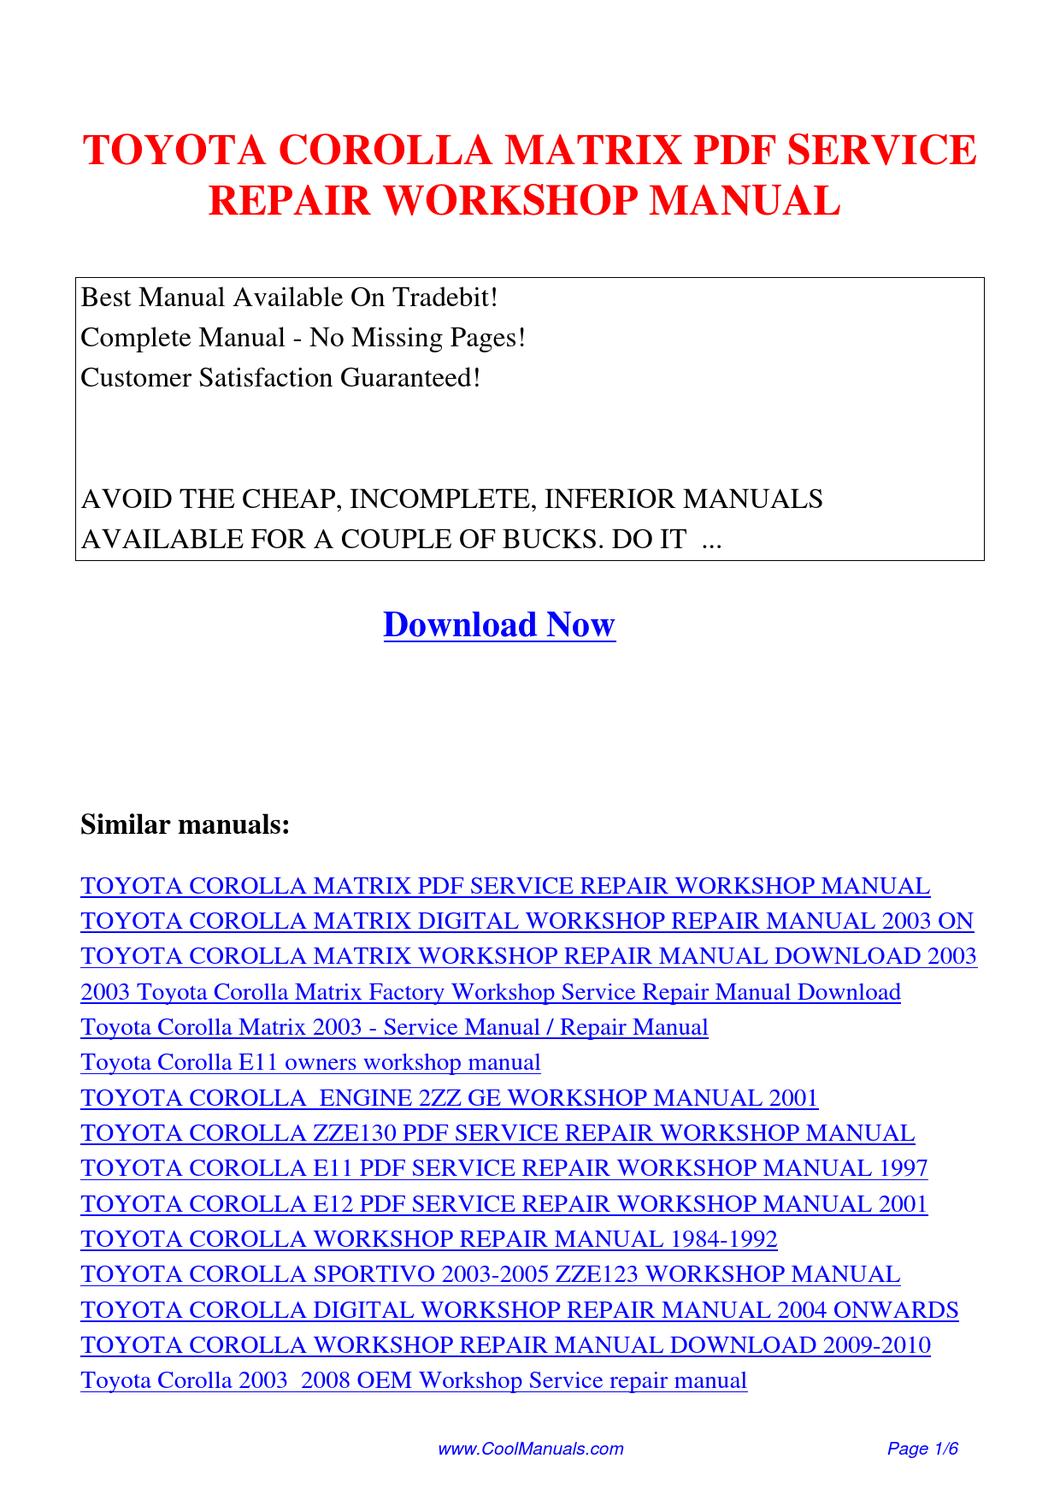 Free chilton repair manual download